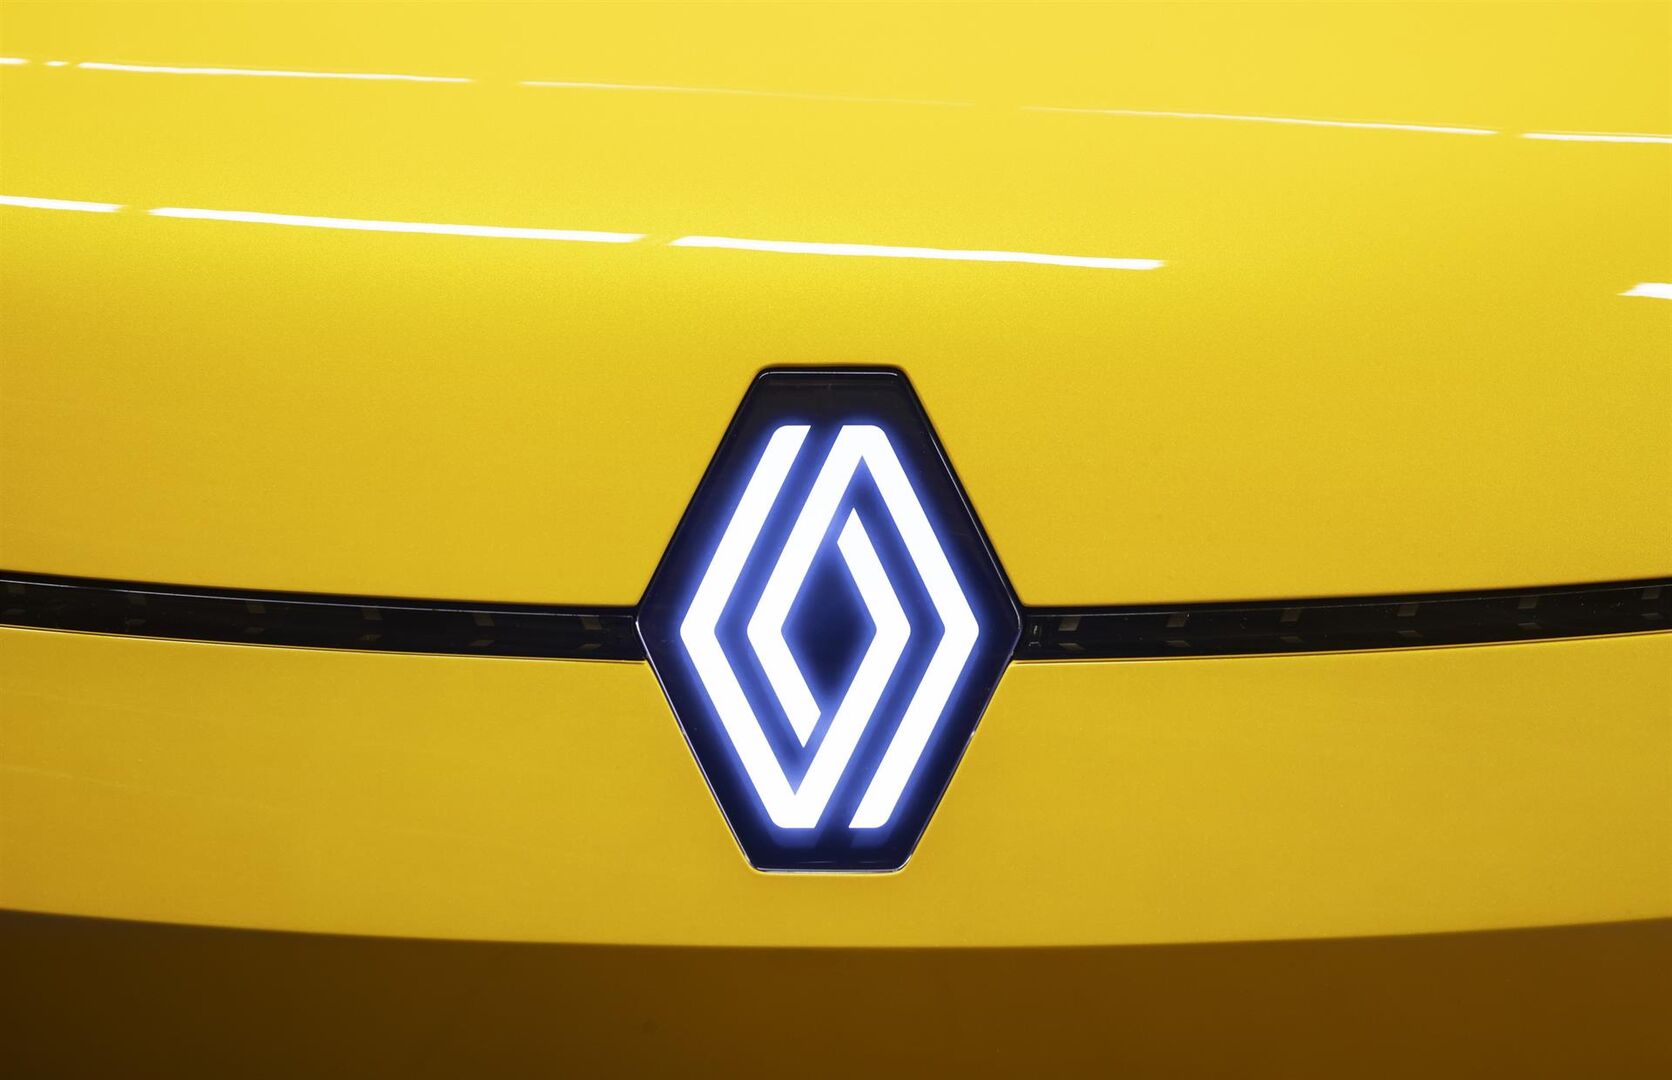 Los coches franceses cambian de imagen: así son los nuevos logos de Renault  y Peugeot - Libre Mercado